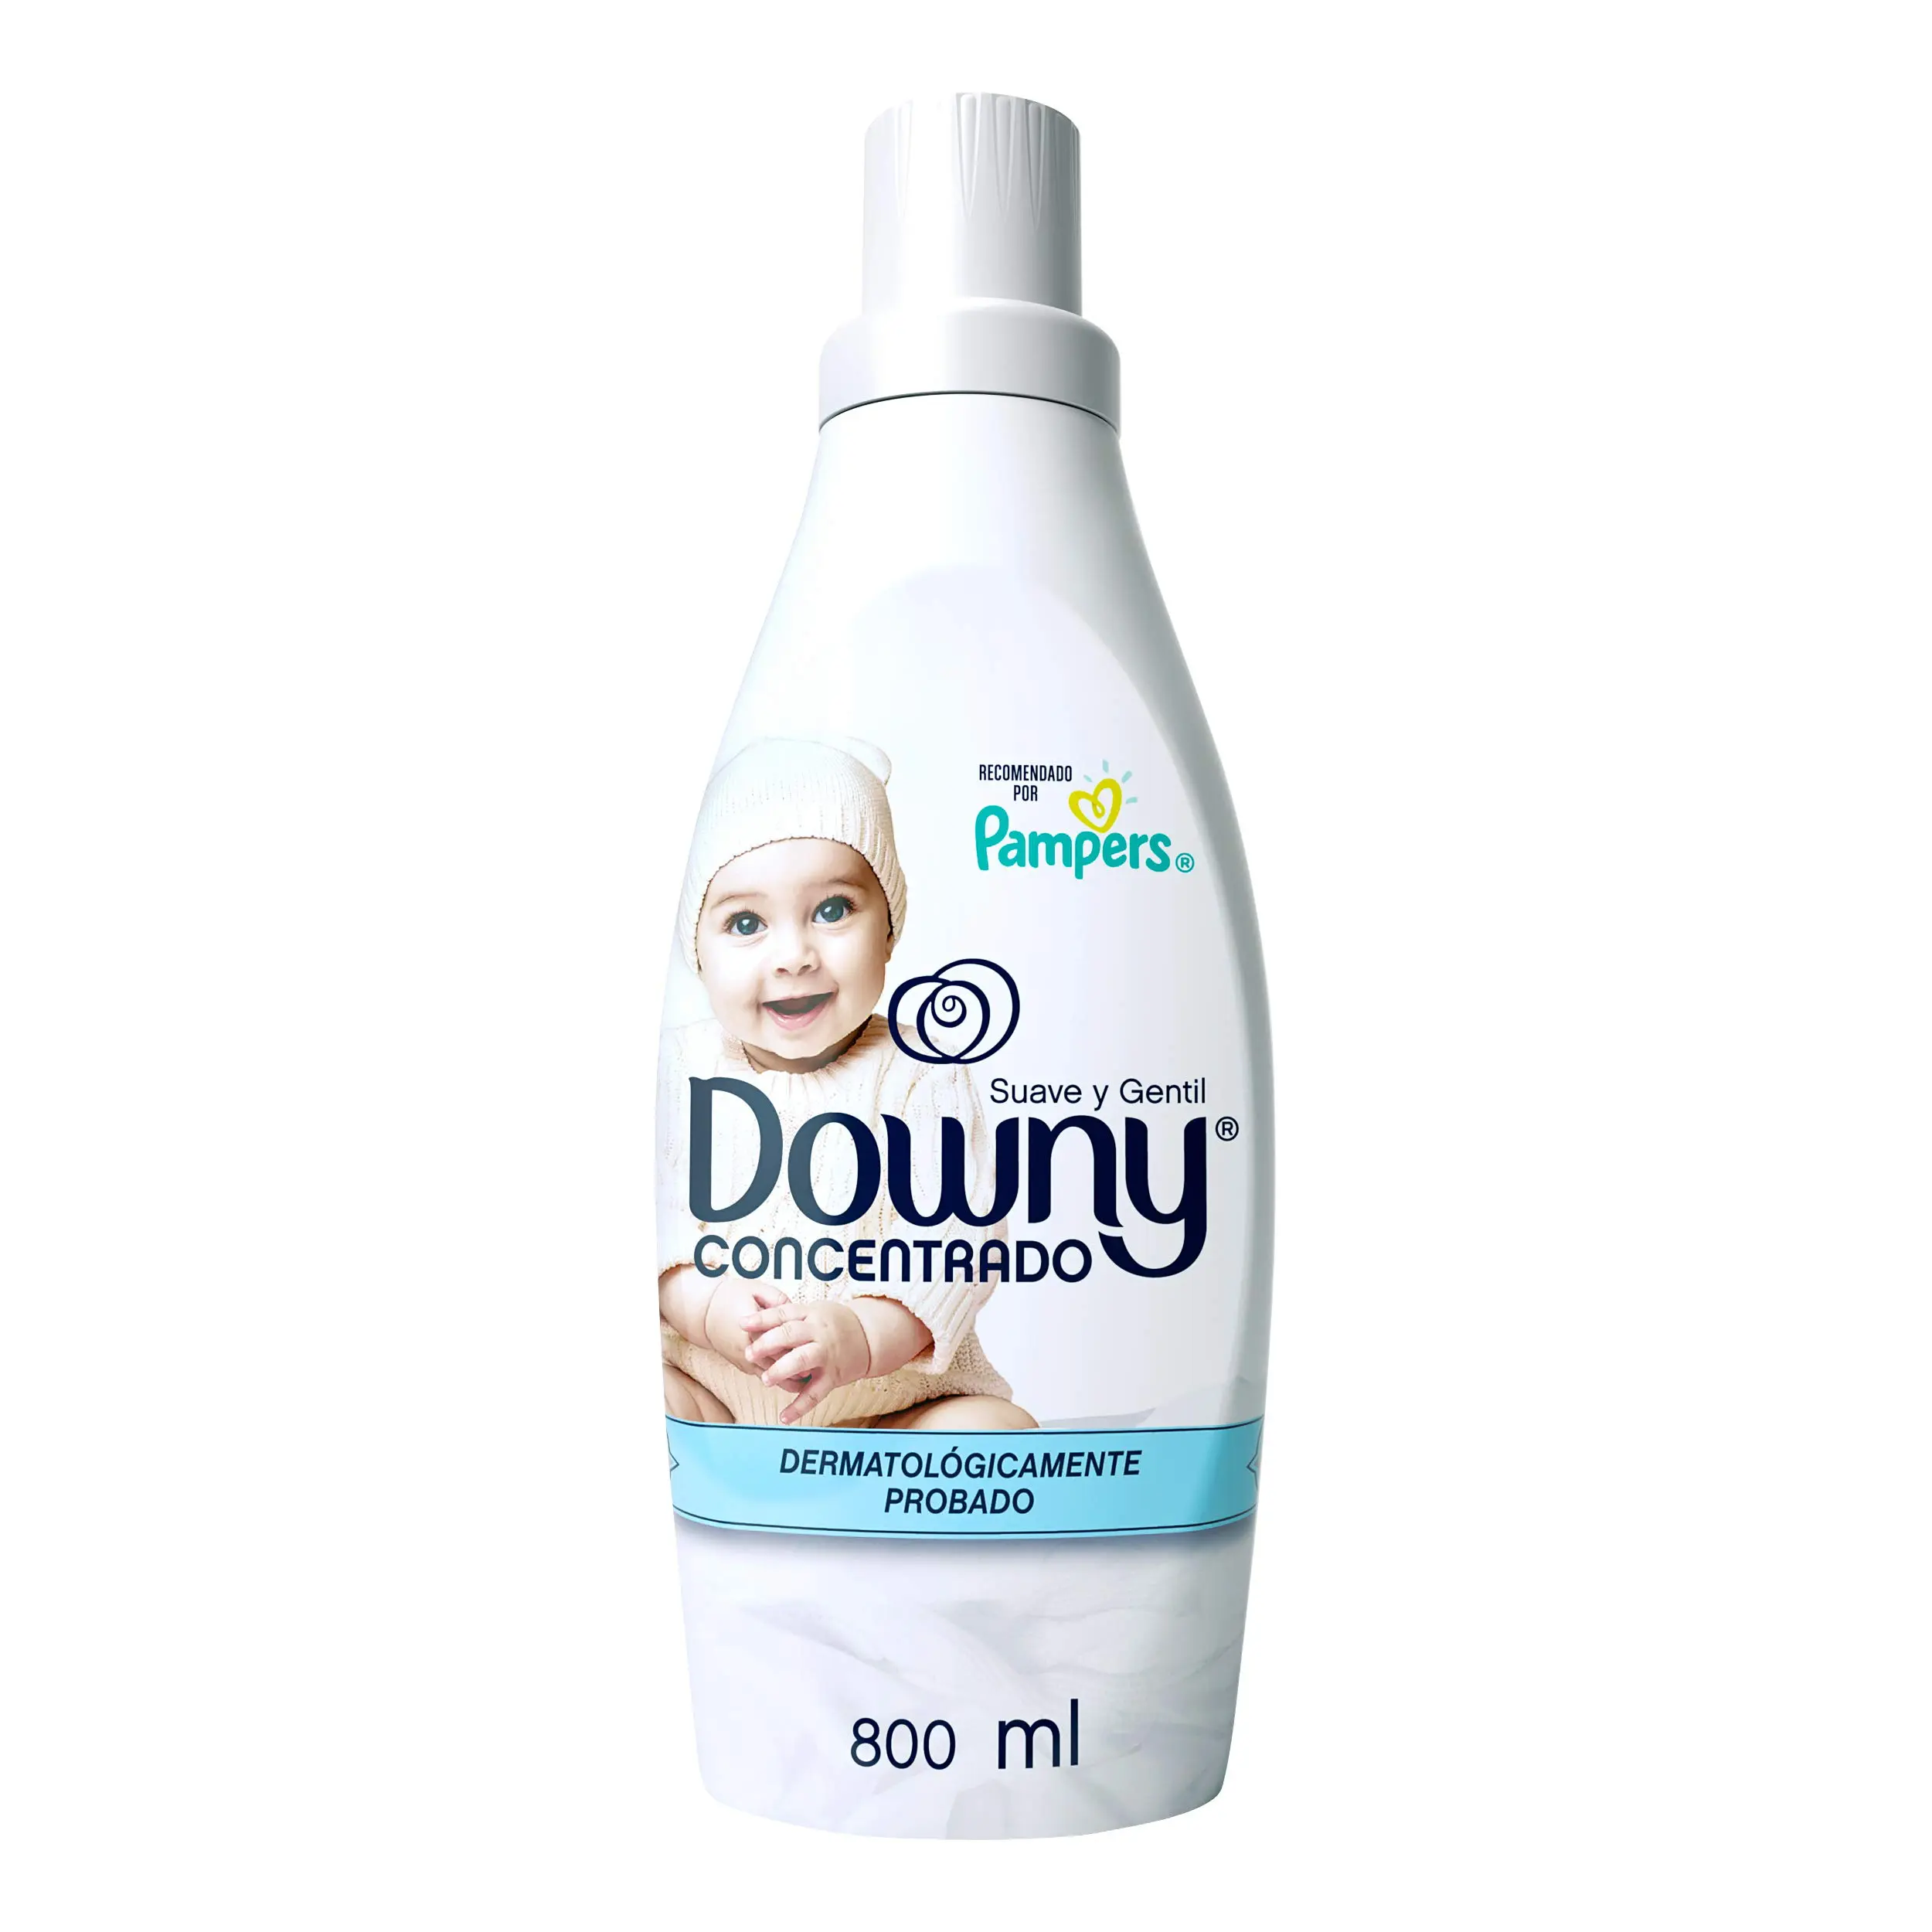 downy para ropa de bebe - Cómo se usa el Downy en la ropa